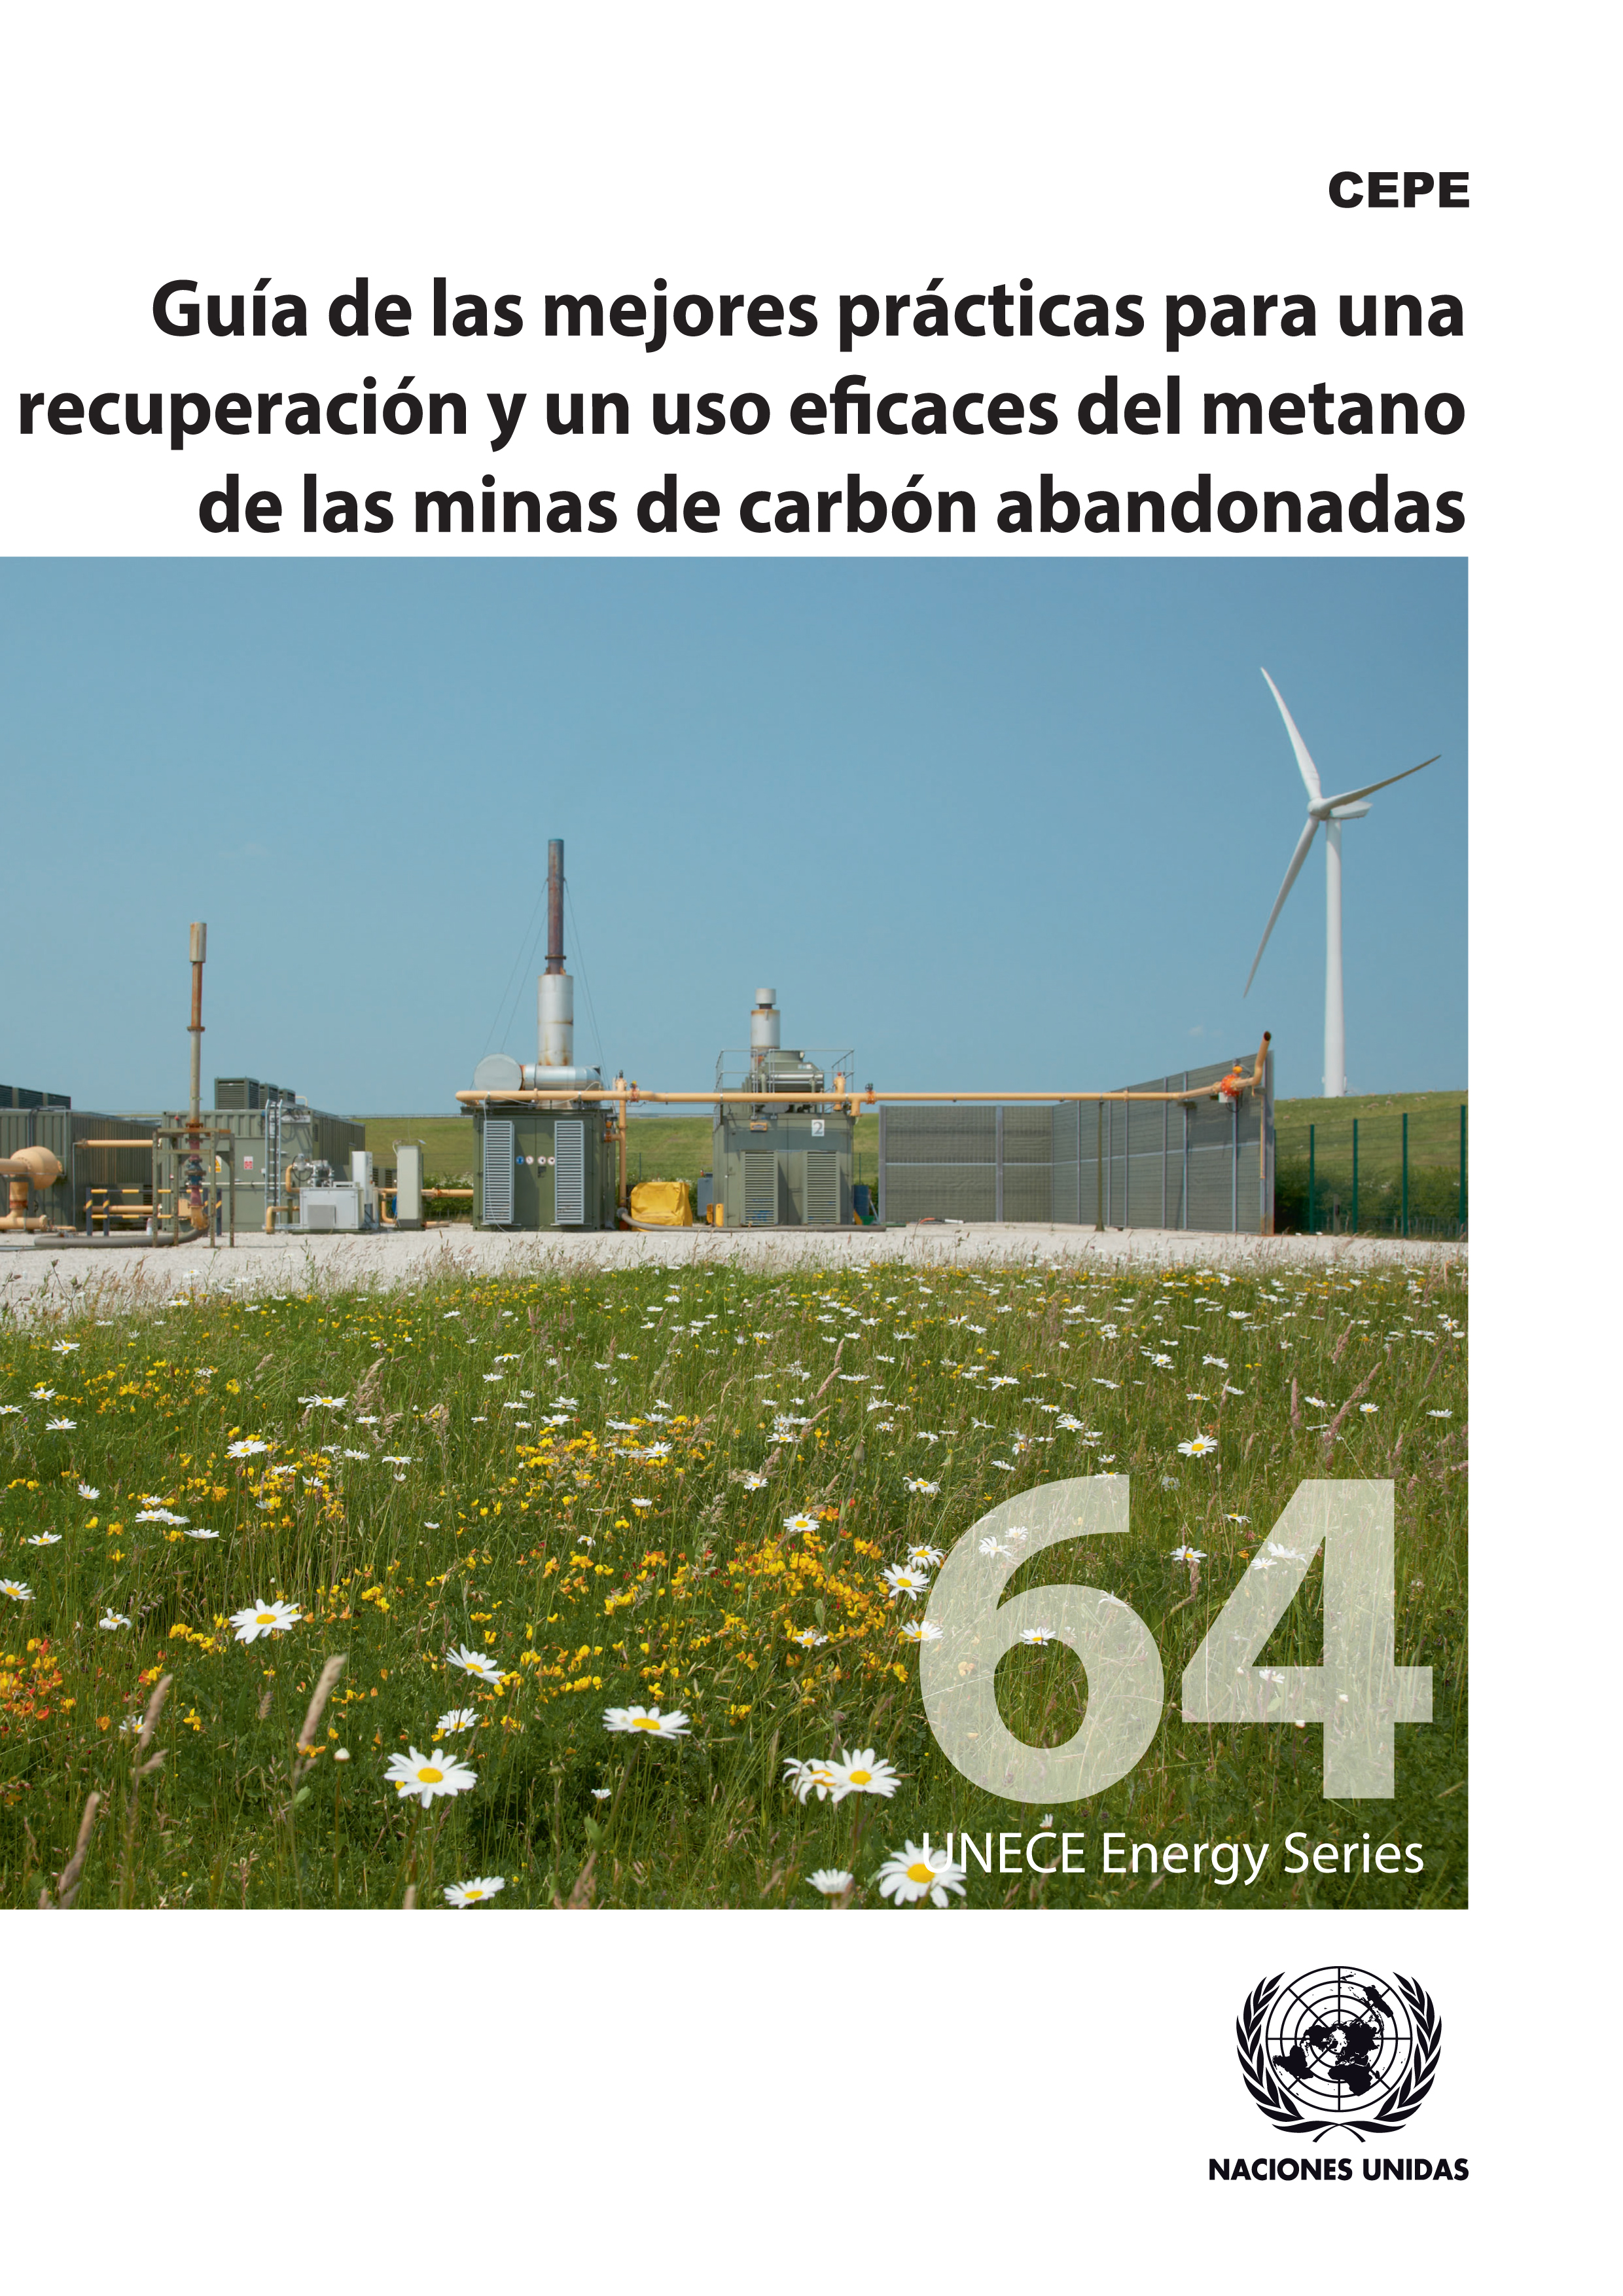 image of Guía de las mejores prácticas para una recuperación y un uso eficaces del metano de las minas de carbón abandonadas